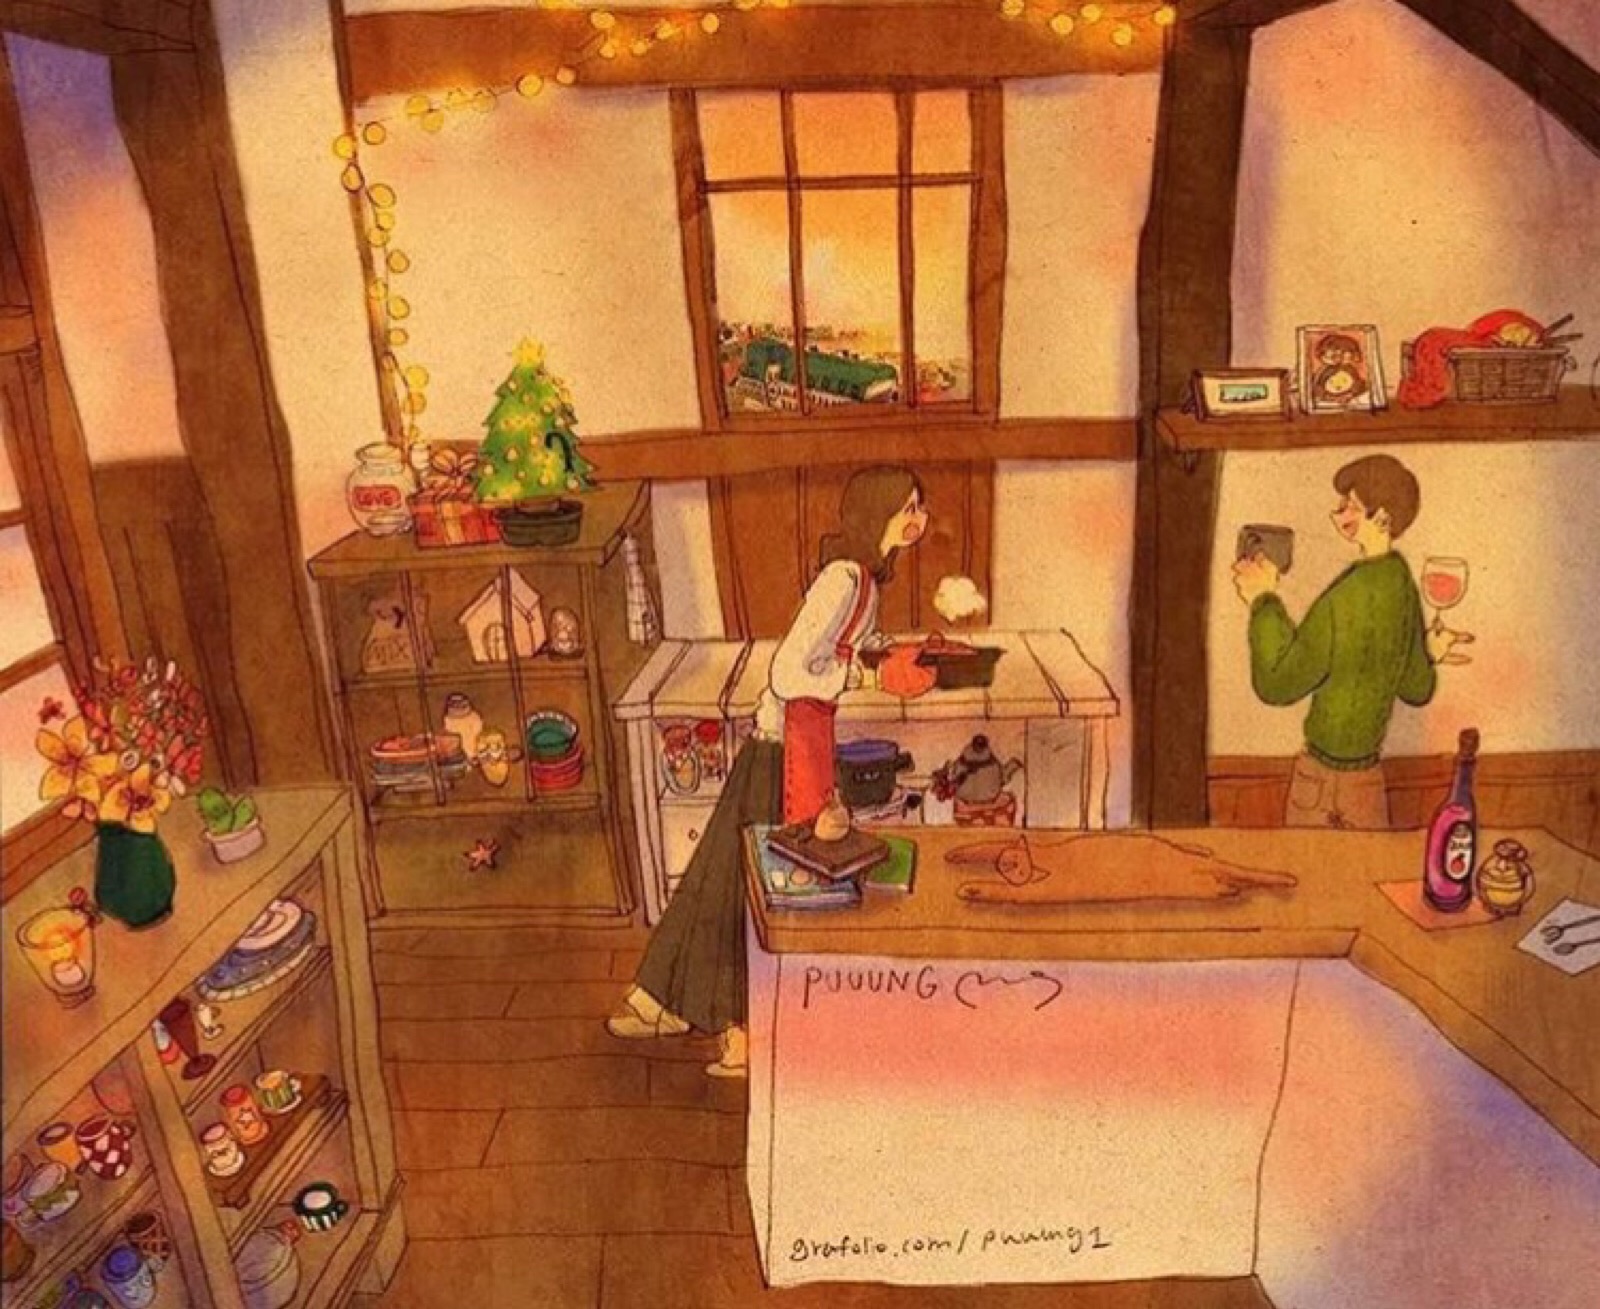 韩国插画师puuung的暖心爱情故事插画 壁纸 - 高清图片，堆糖，美图壁纸兴趣社区